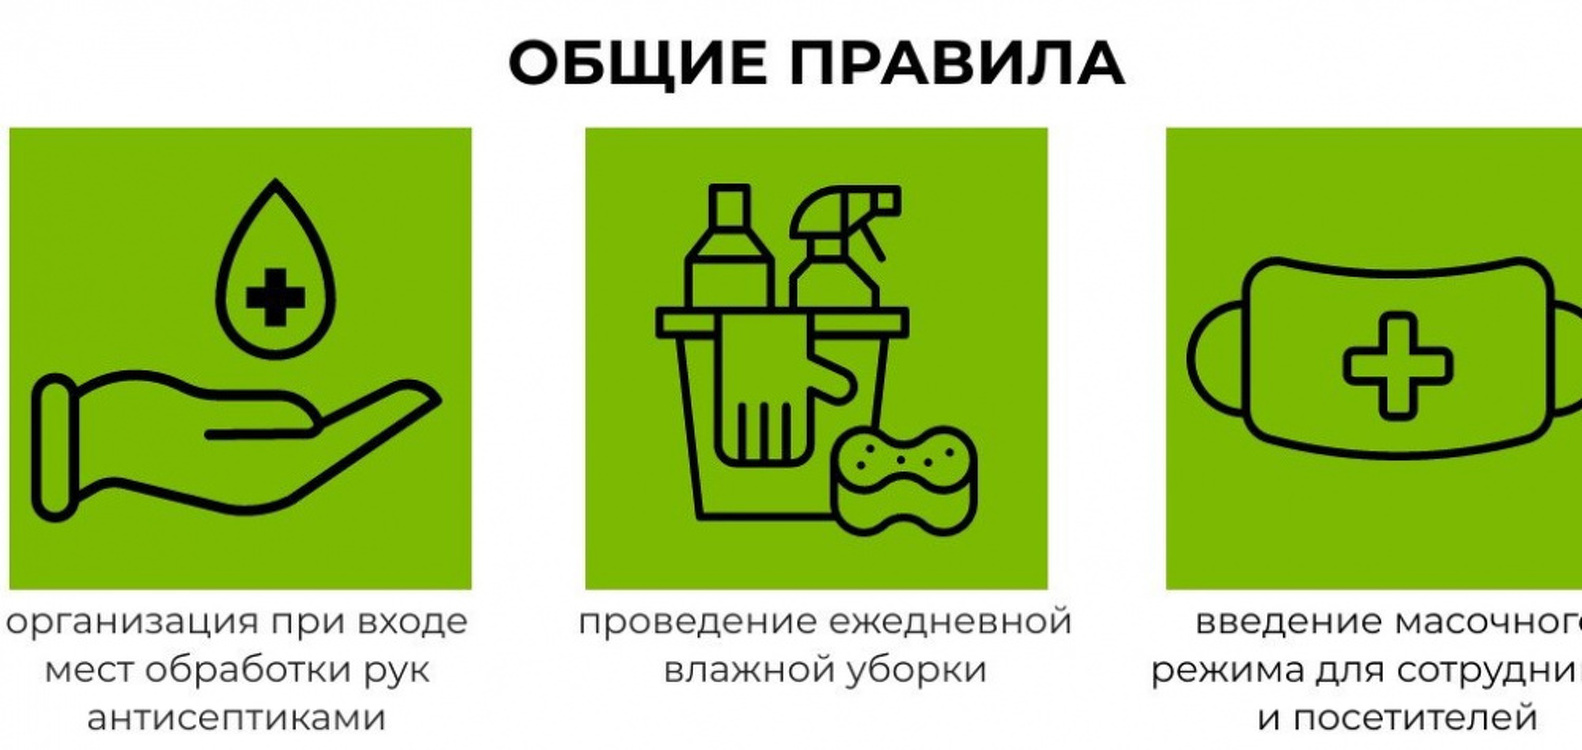 Бишкек. Требования к объектам, которые возобновляют работу 25 мая — Today.kg